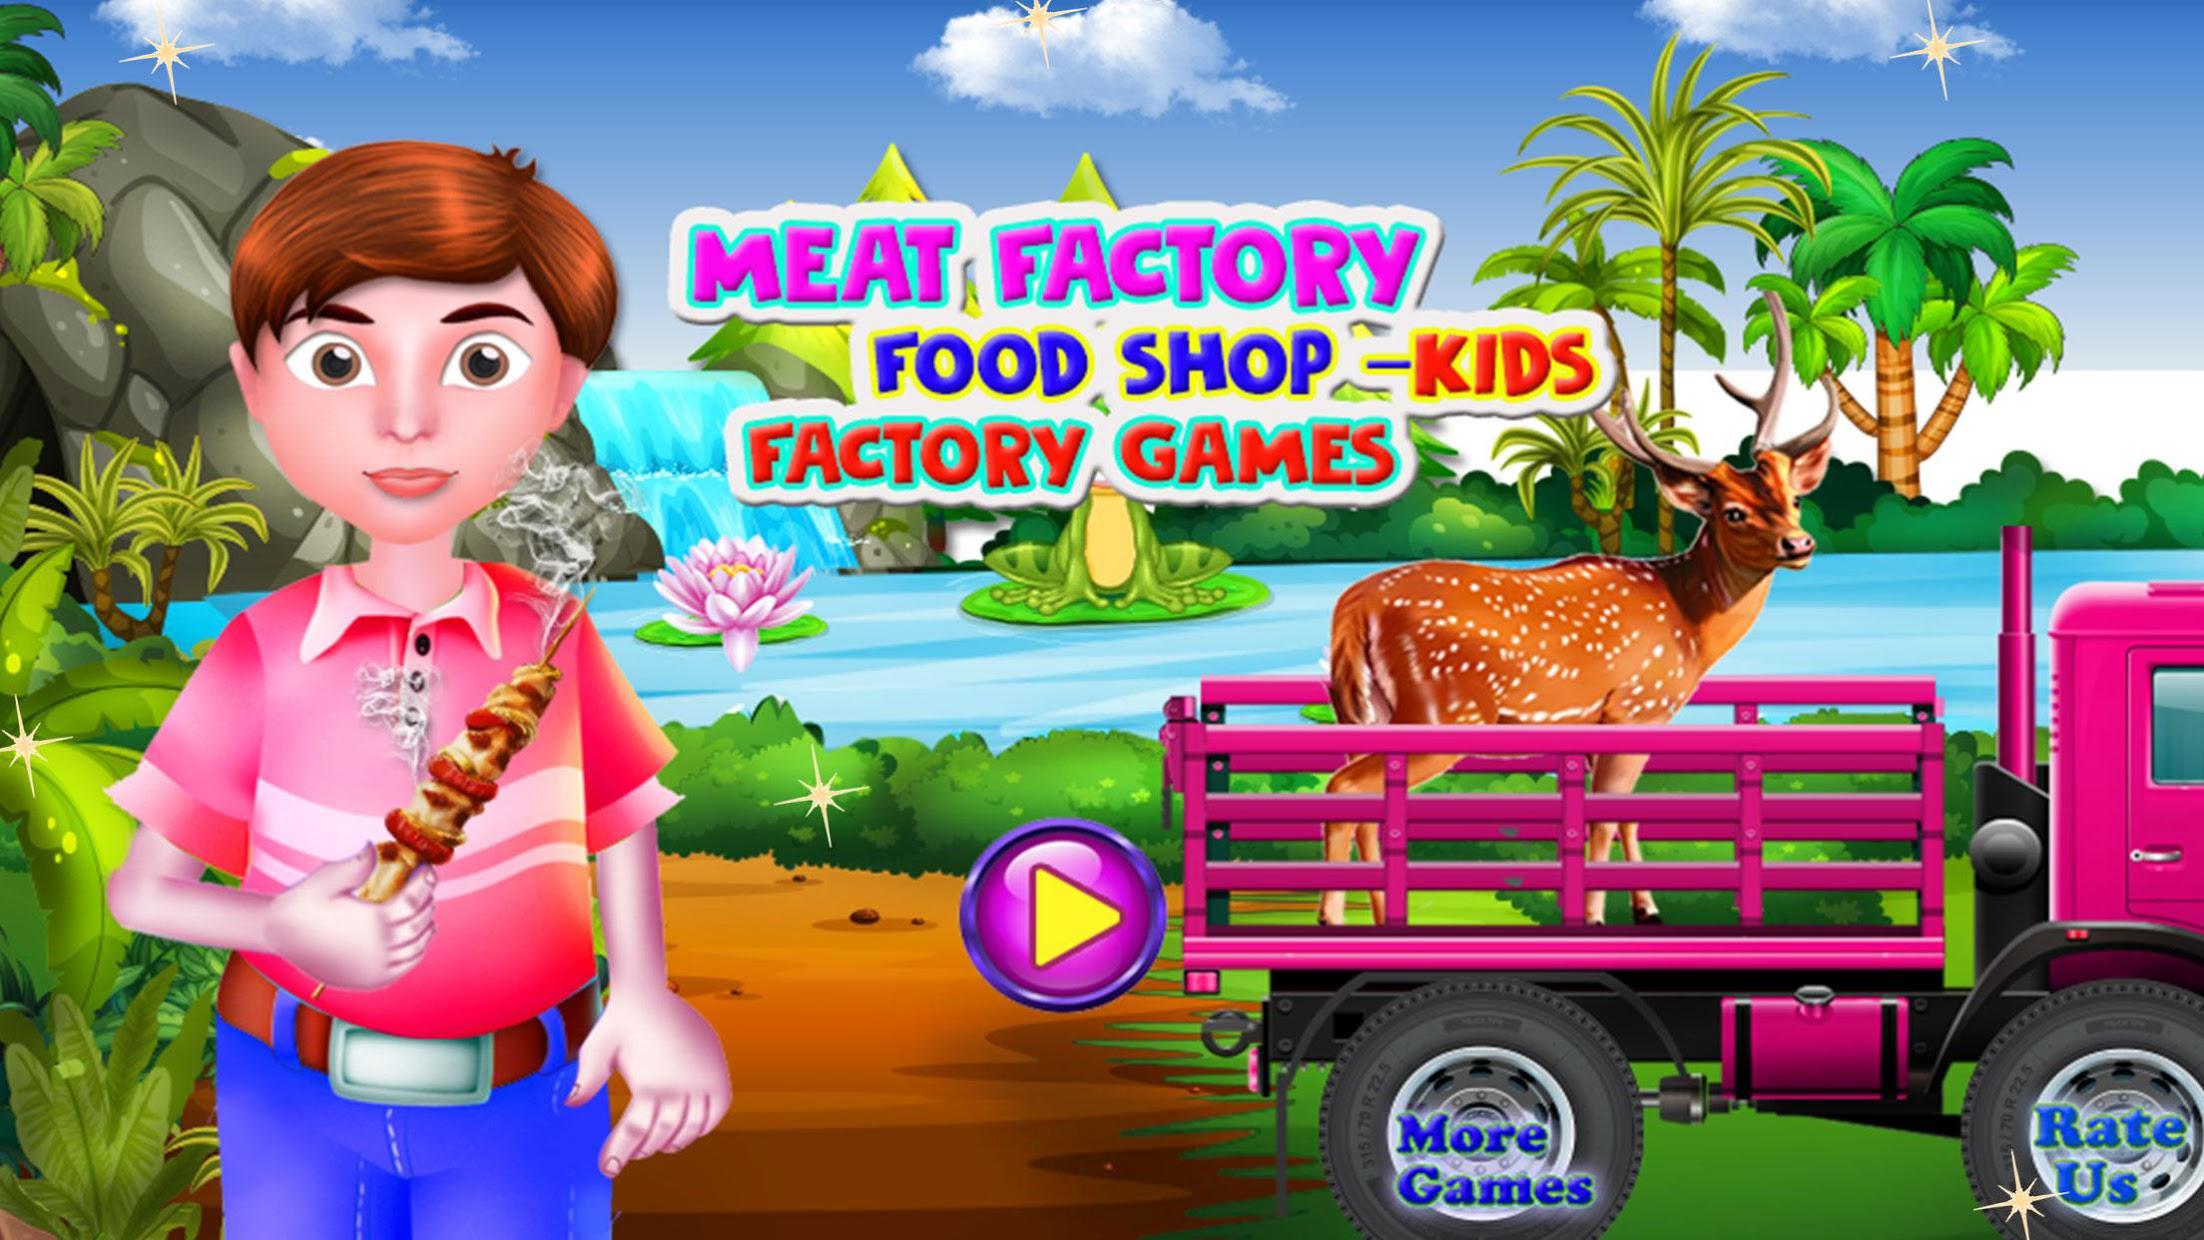 肉厂食品店 - 工厂游戏